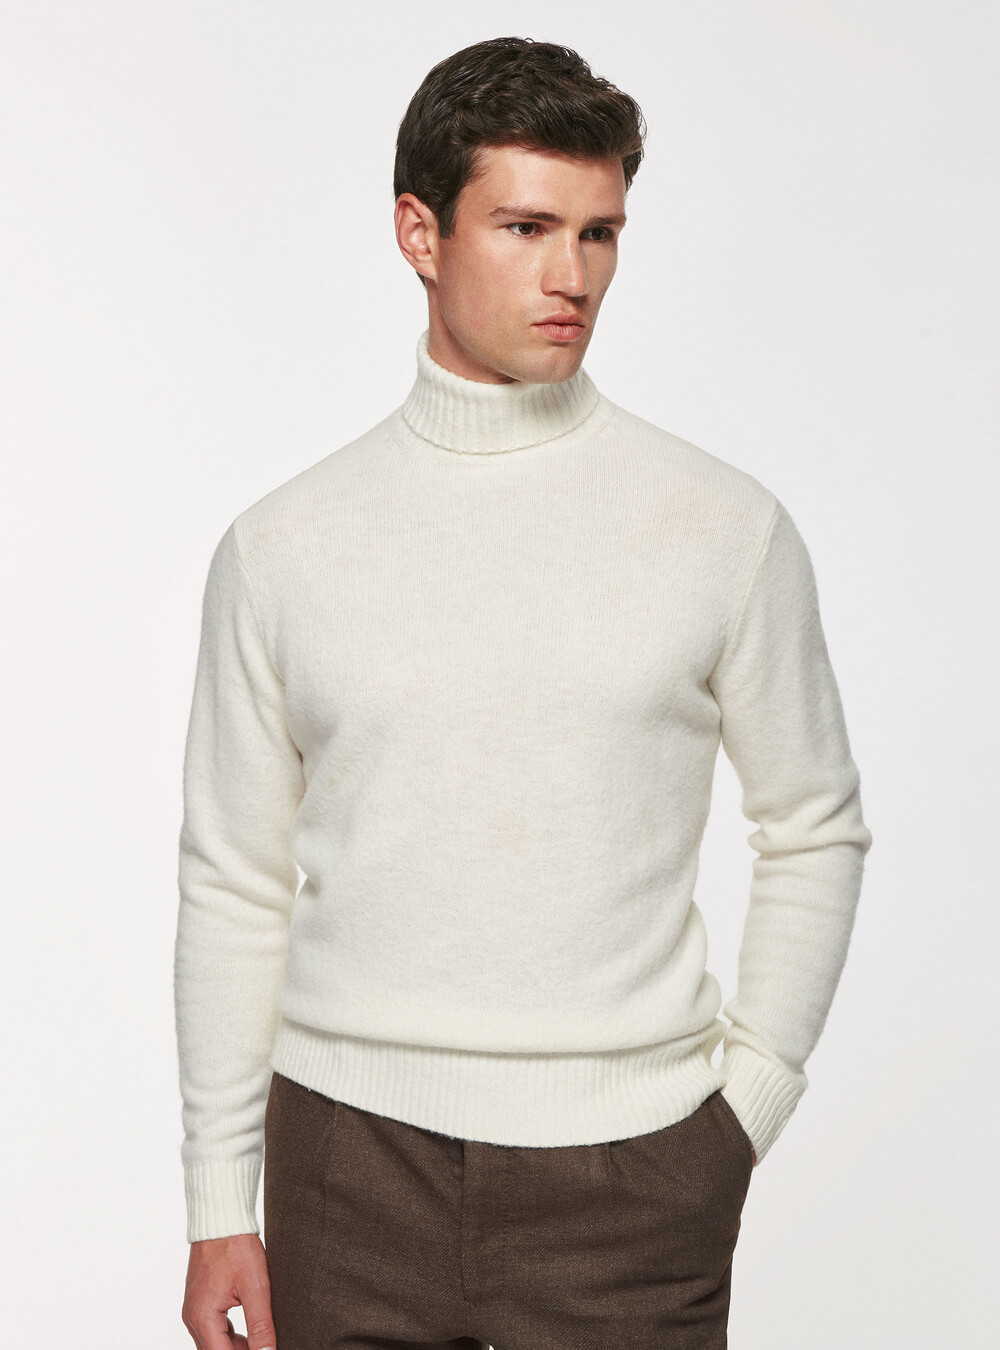 Brushed wool turtleneck sweater, GutteridgeEU